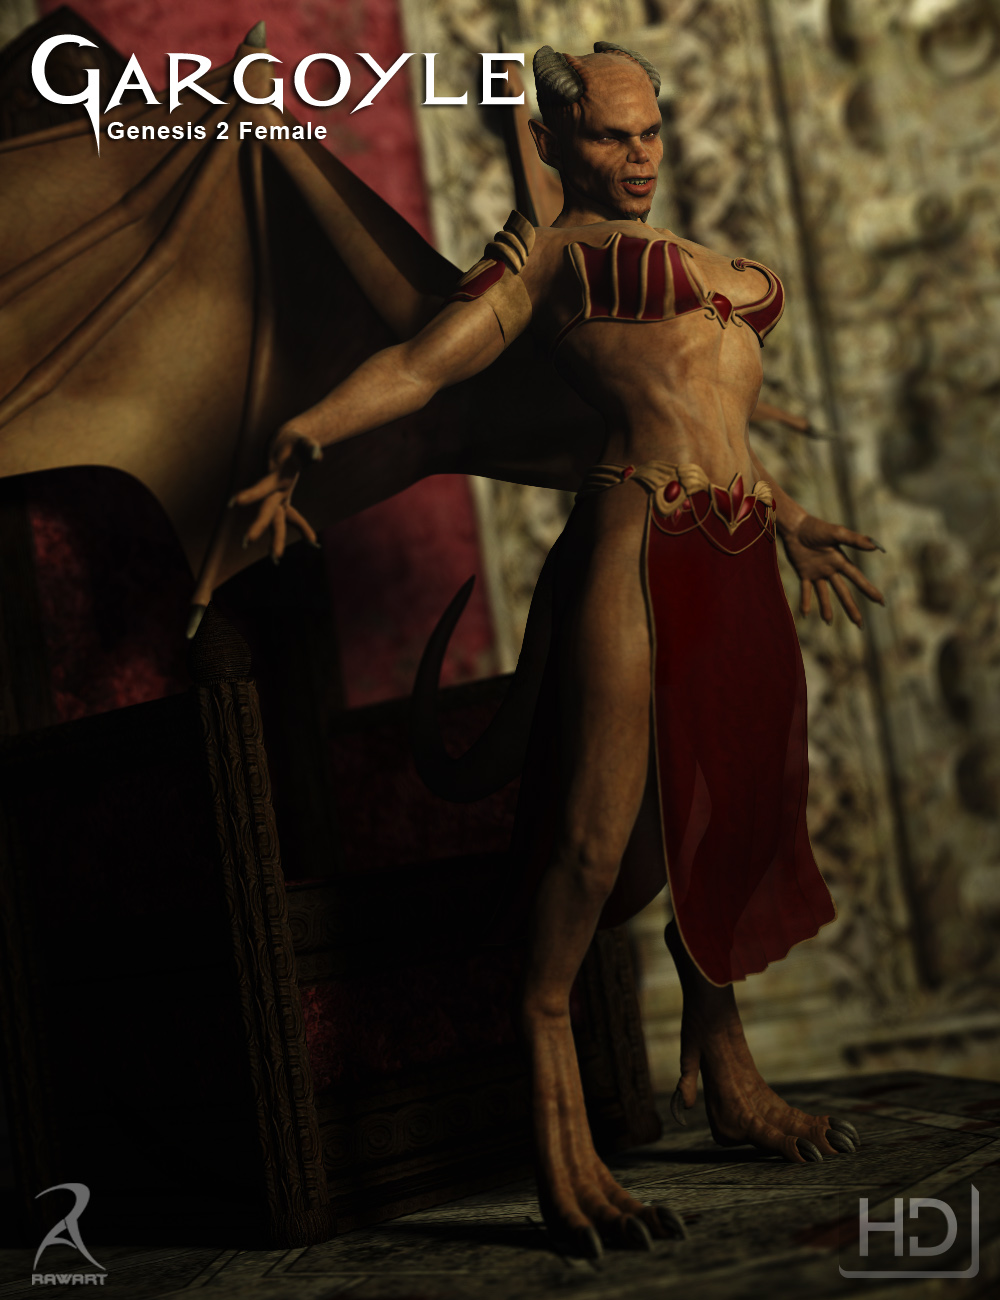 Gargoyle HD for Genesis 2 Female(s) by: RawArt, 3D Models by Daz 3D